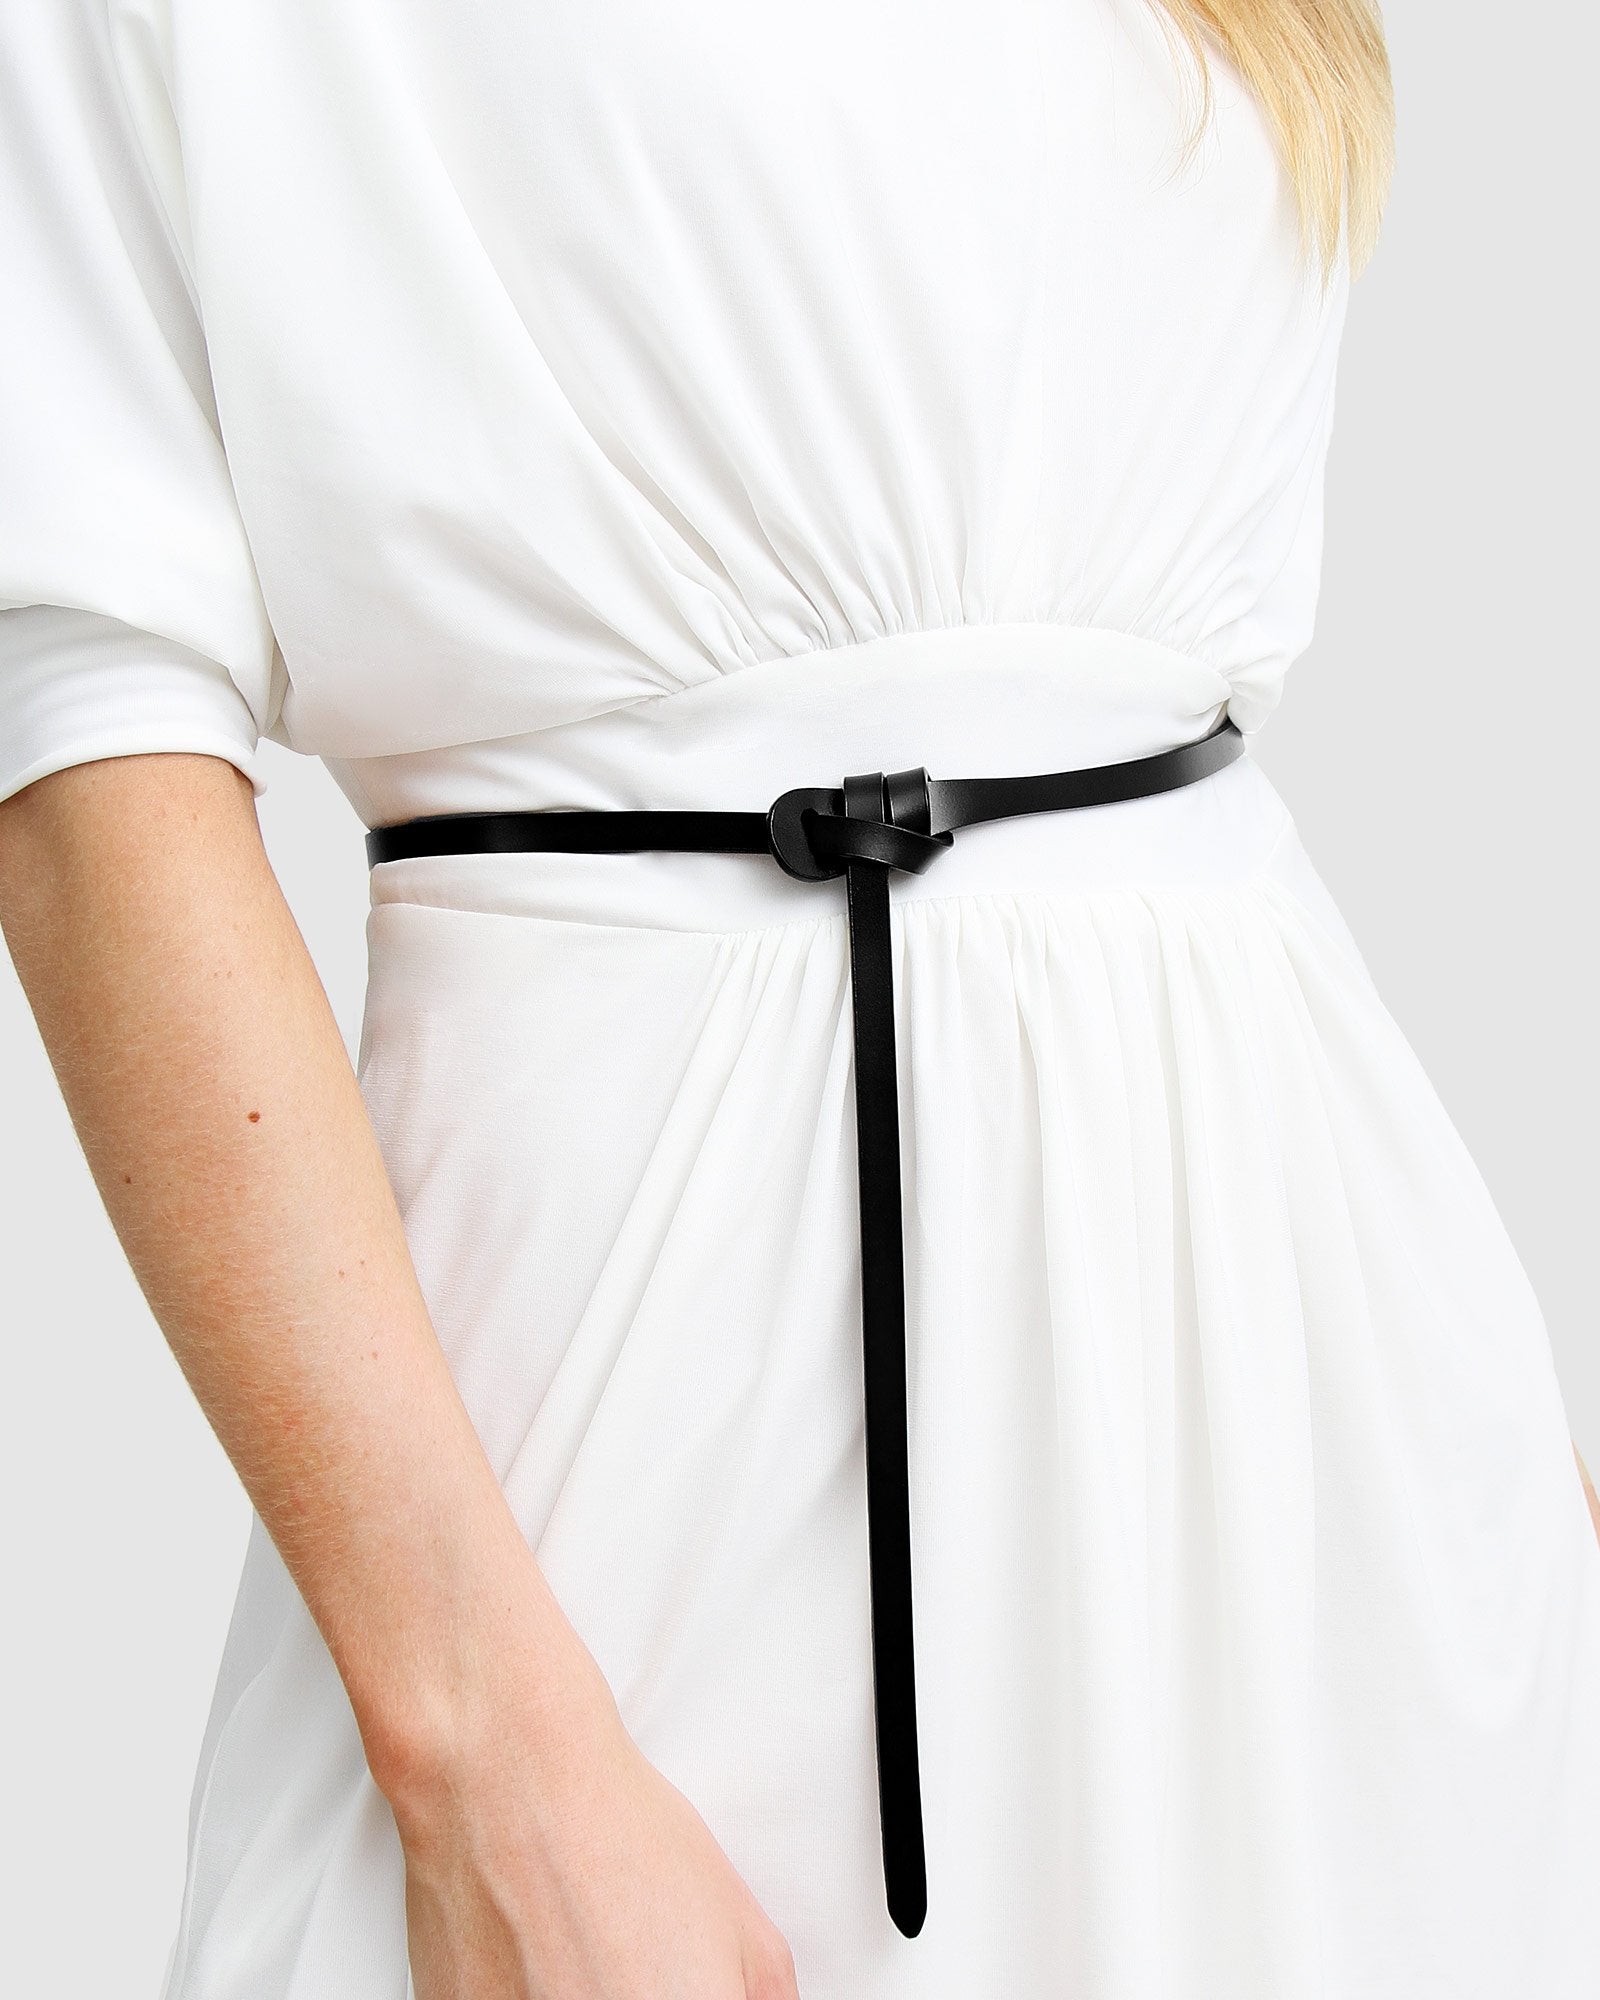 Louis Vuitton Tie The Knot Leather Waist Belt - Black Belts